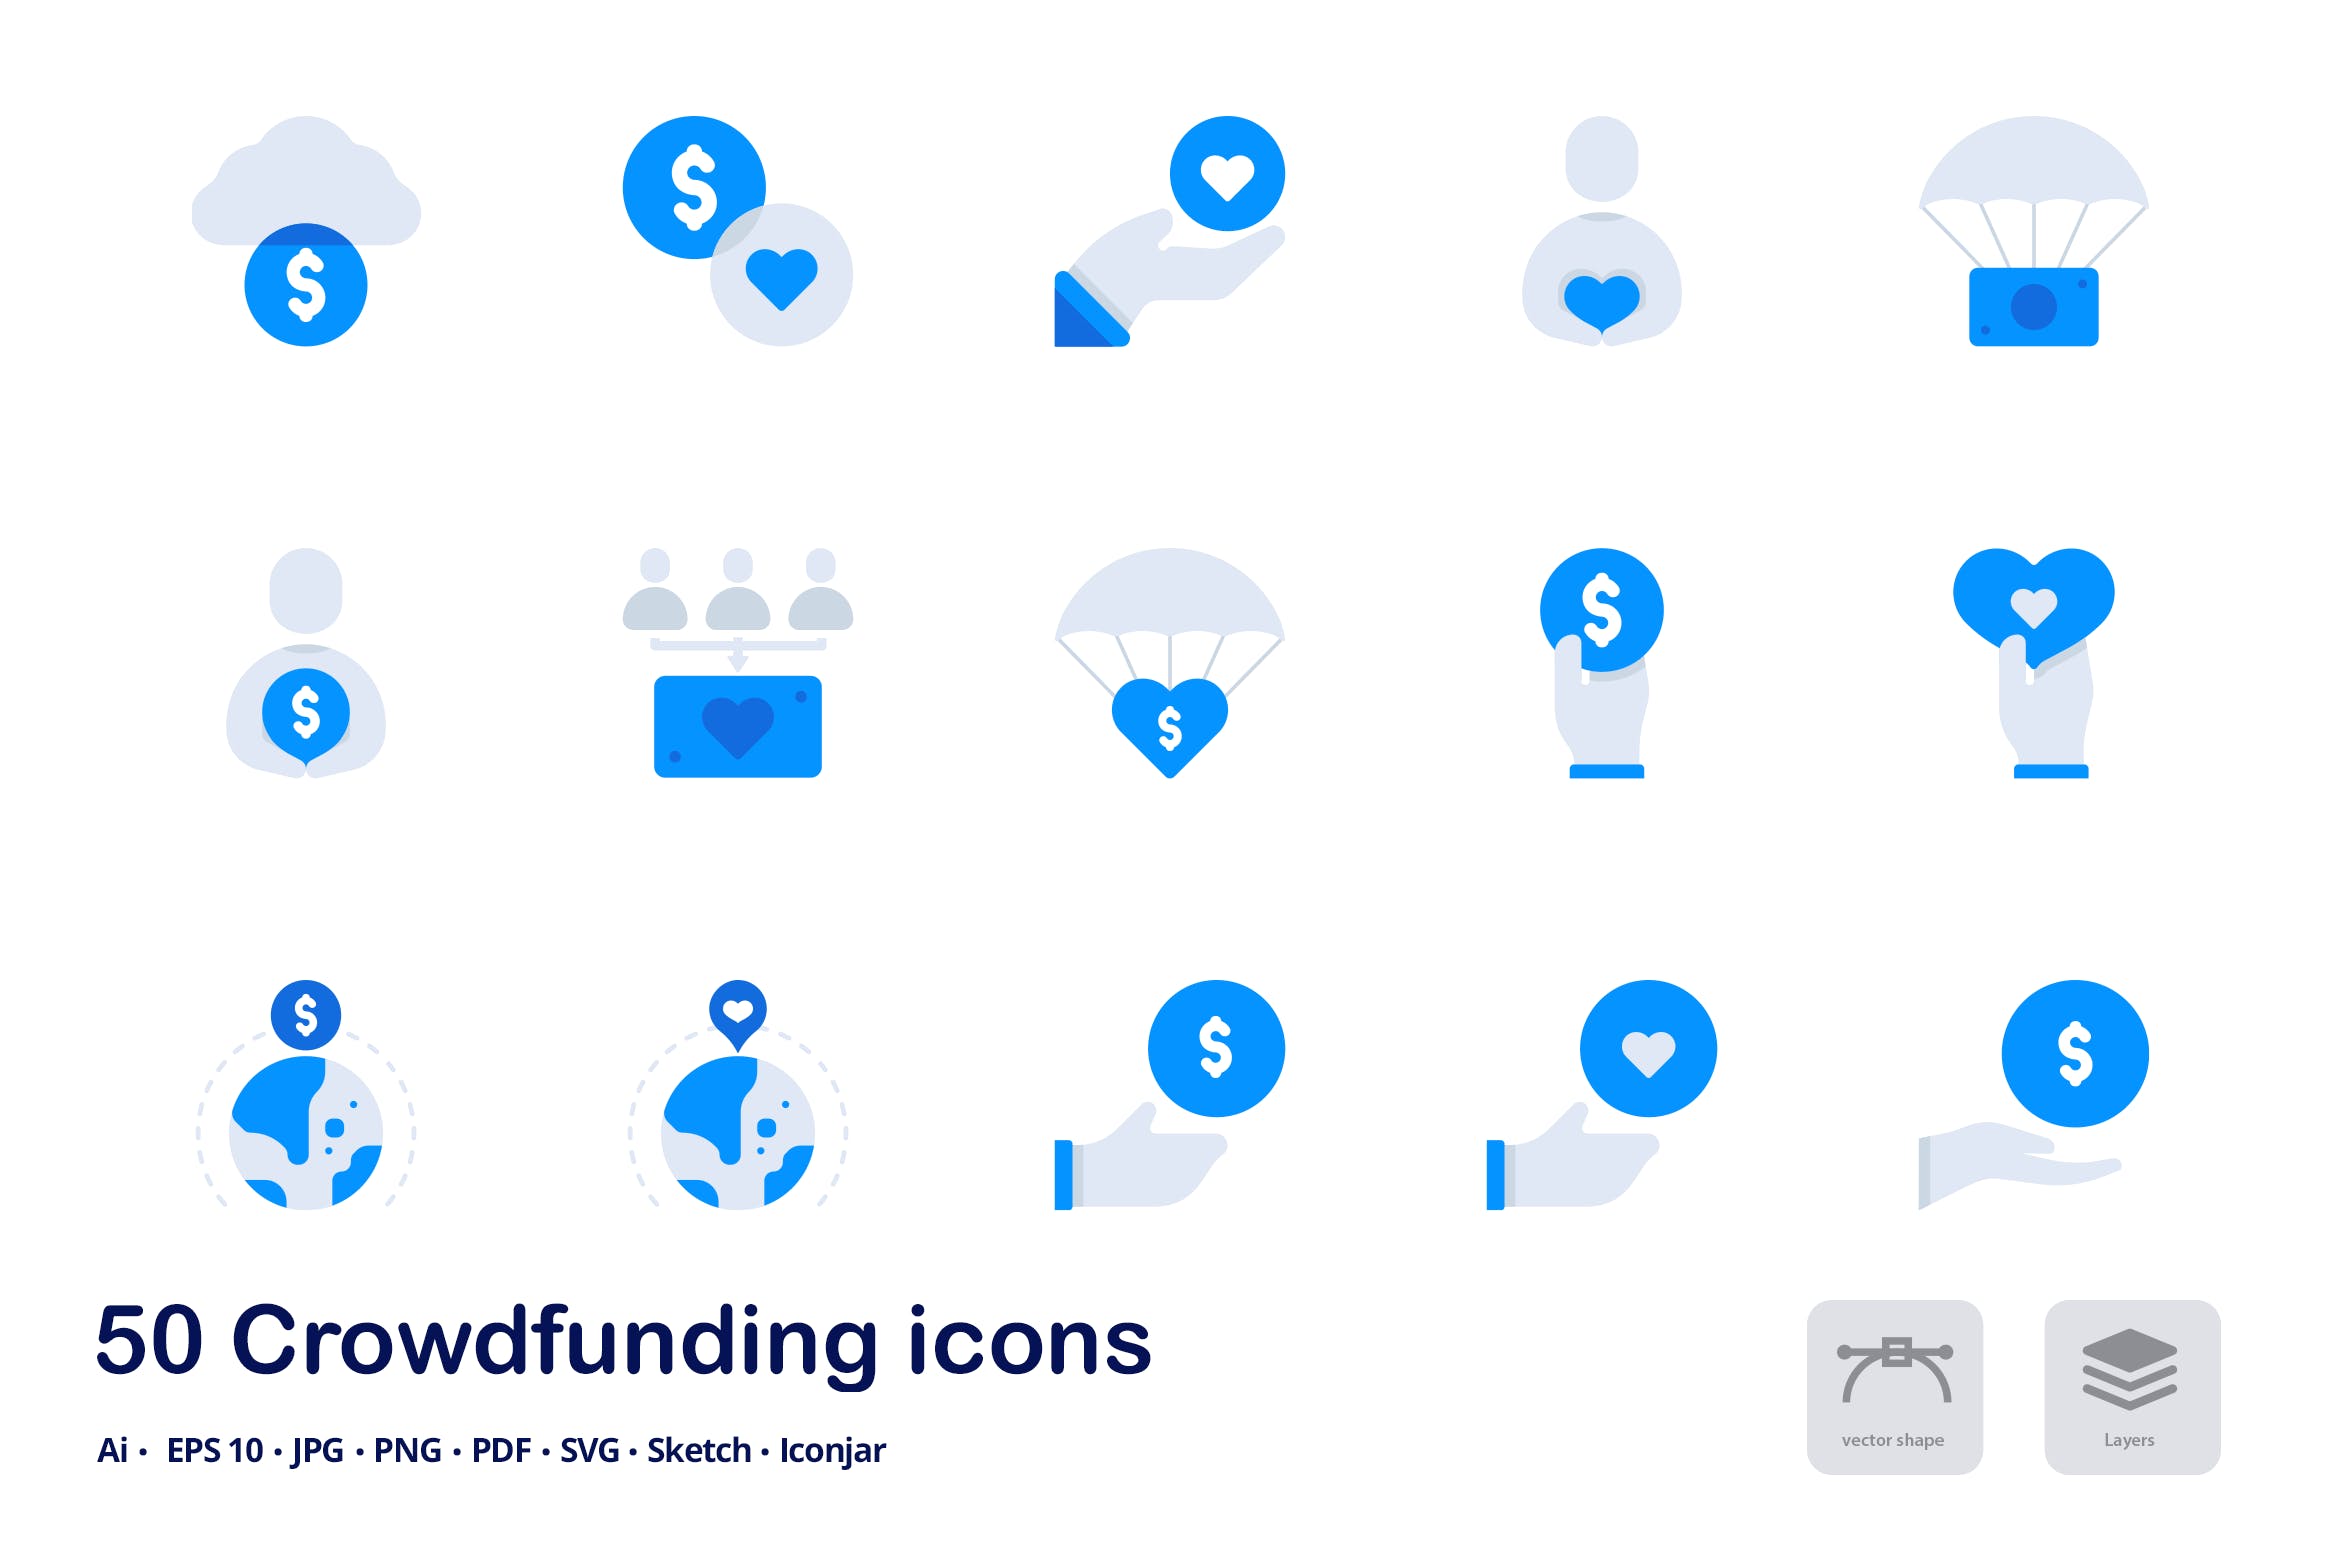 互联网众筹项目双色调扁平化矢量图标 Crowdfunding